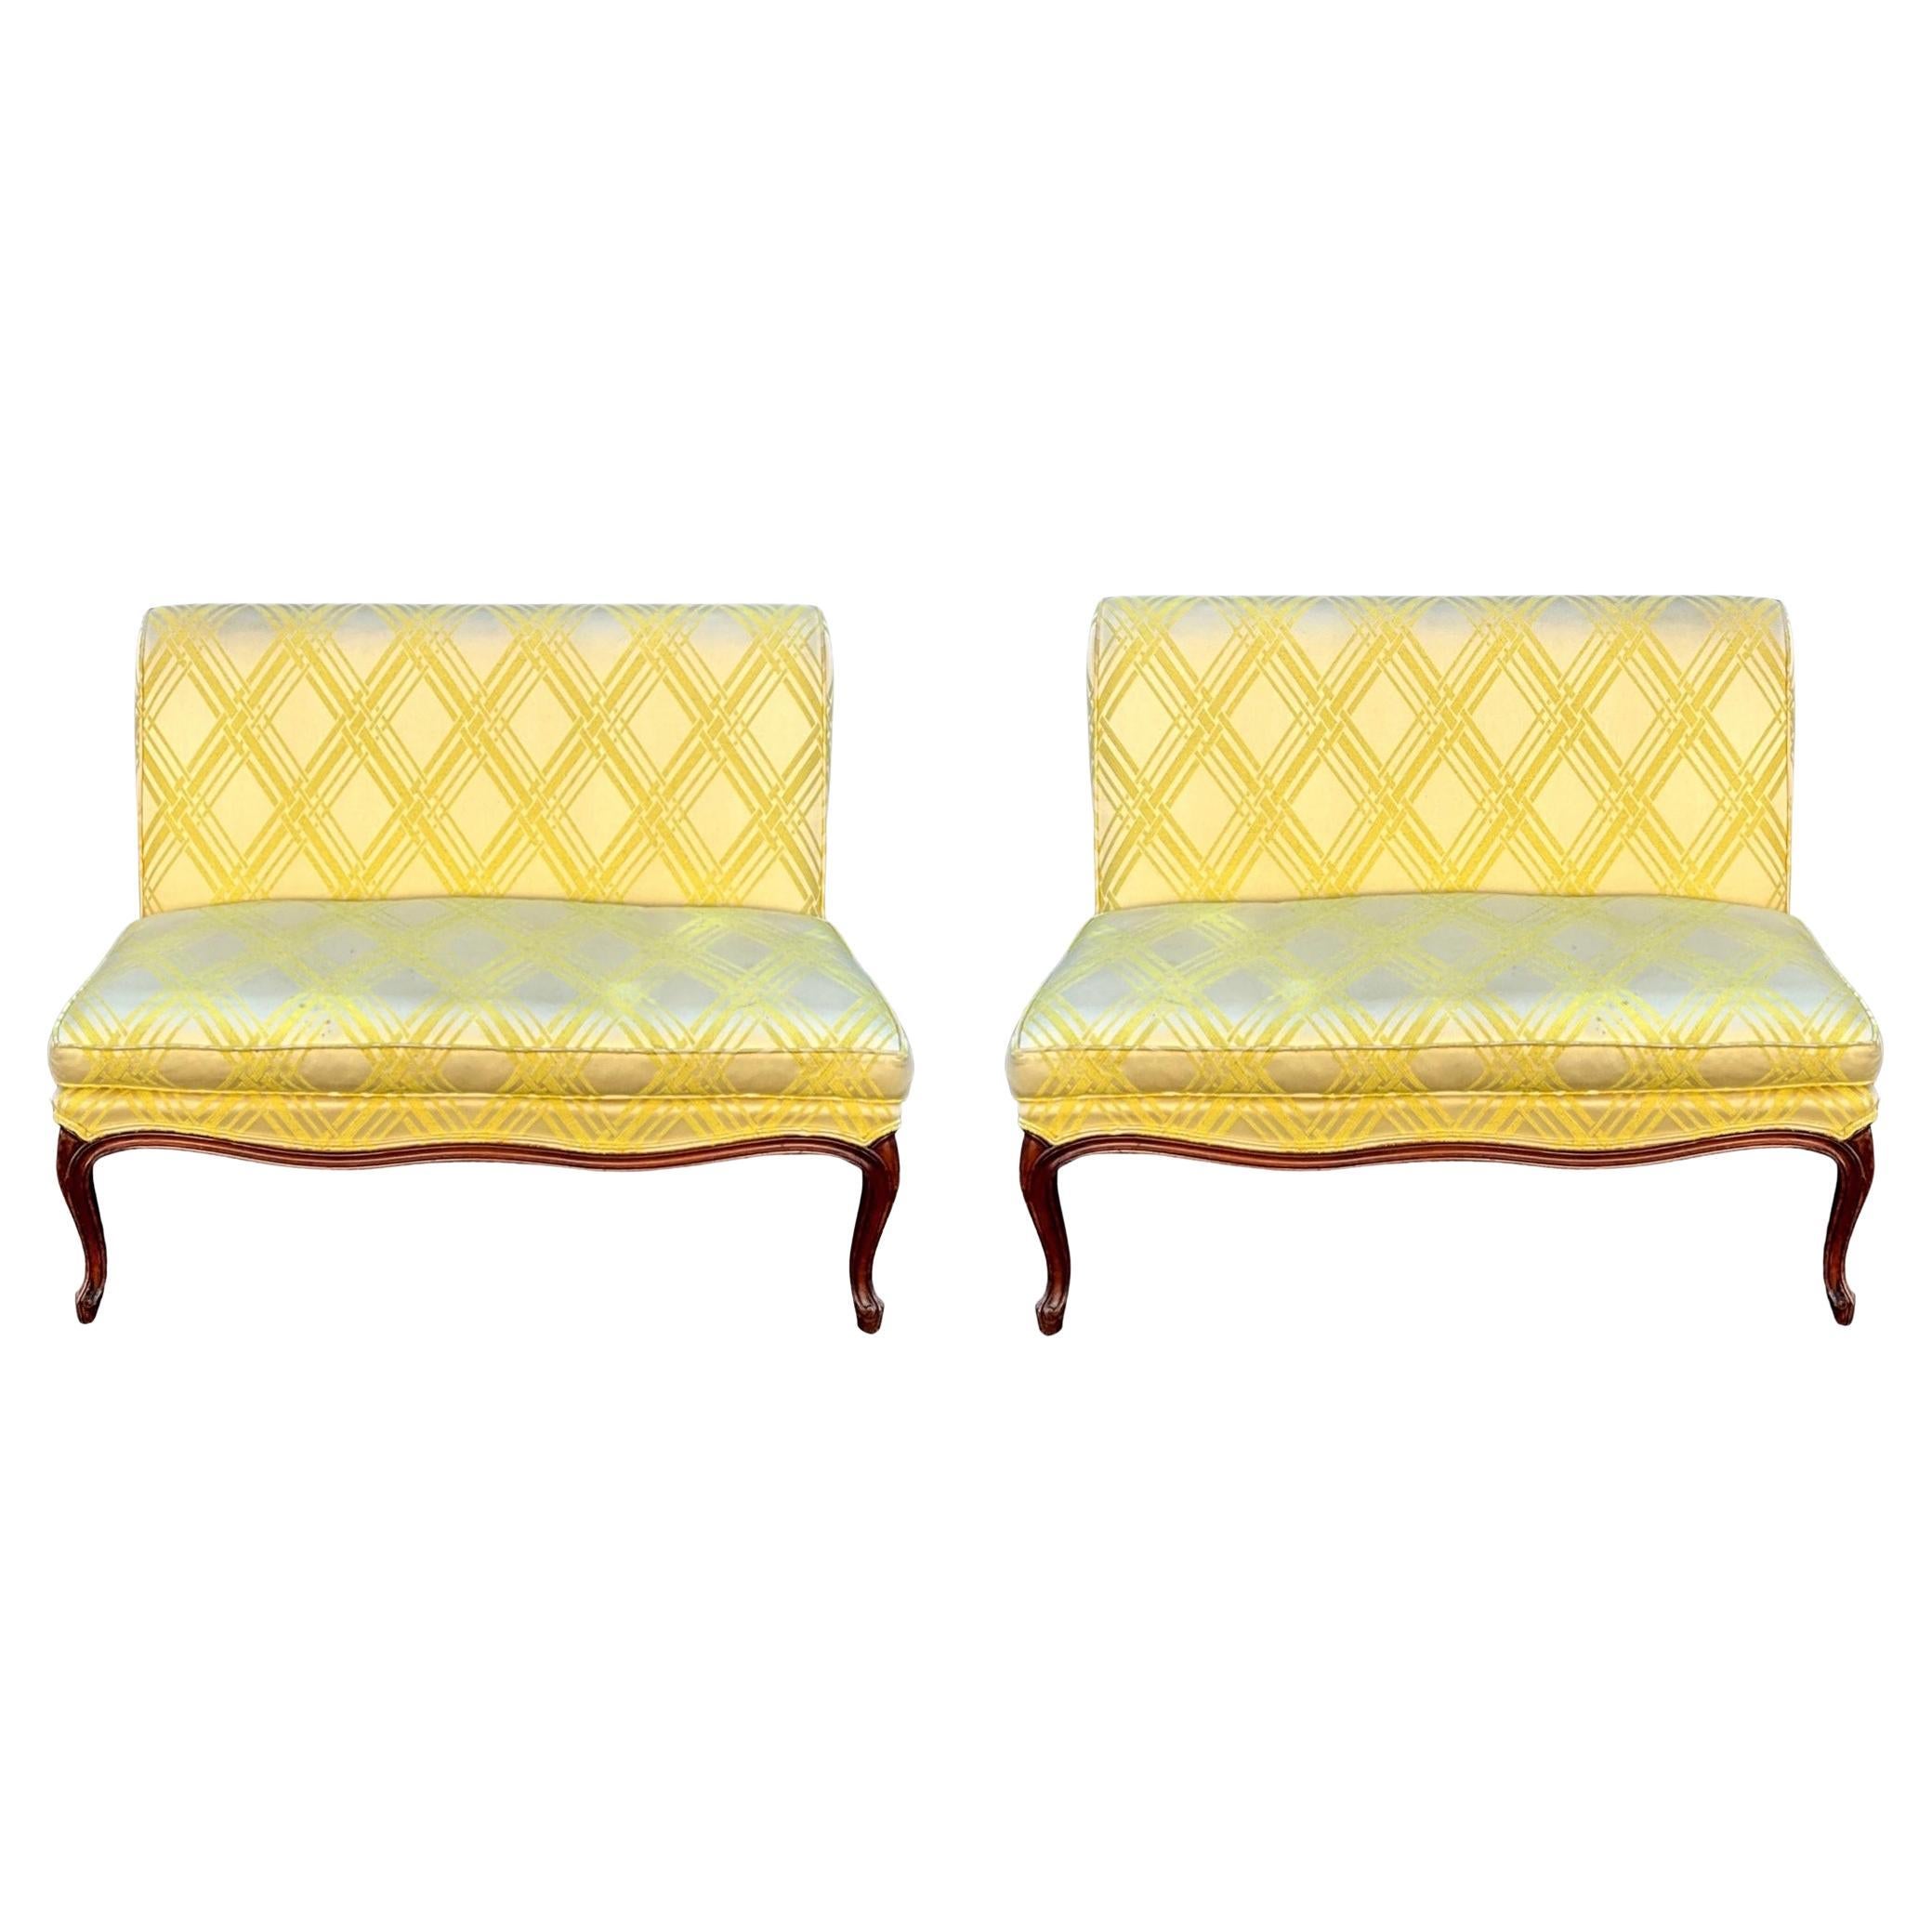 Dies ist ein hübsches Paar geschnitzter Sofas aus Obstholz im französischen Provinzstil aus der Mitte des Jahrhunderts mit einem hübschen gelben Vintage-Stoff. Sie sind amerikanisch und in sehr gutem Zustand. Der Stoff weist leichte Gebrauchsspuren